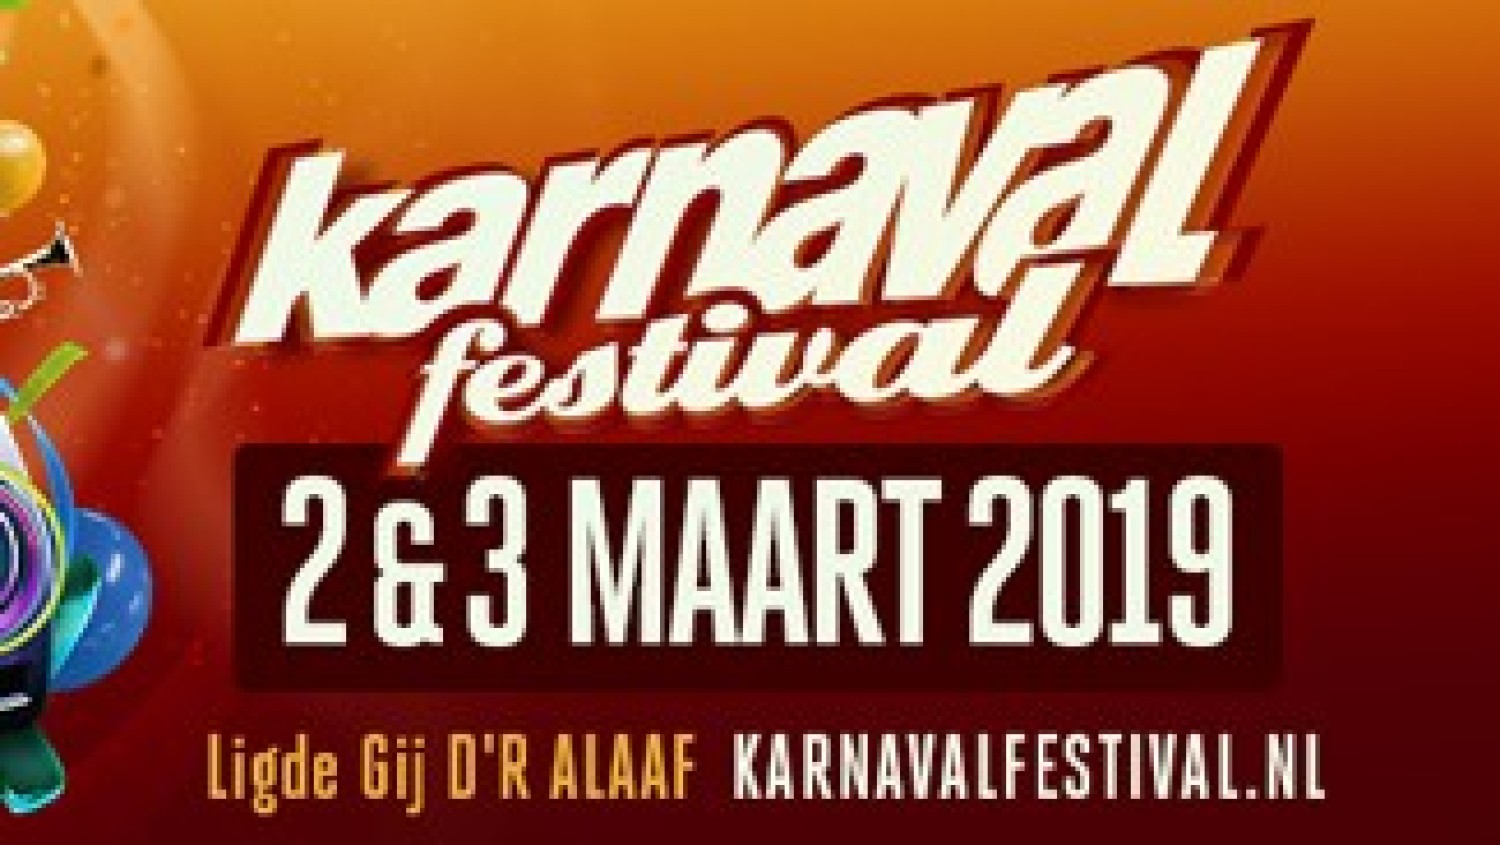 Party report: Karnaval Festival, Moergestel (10-02-2018)